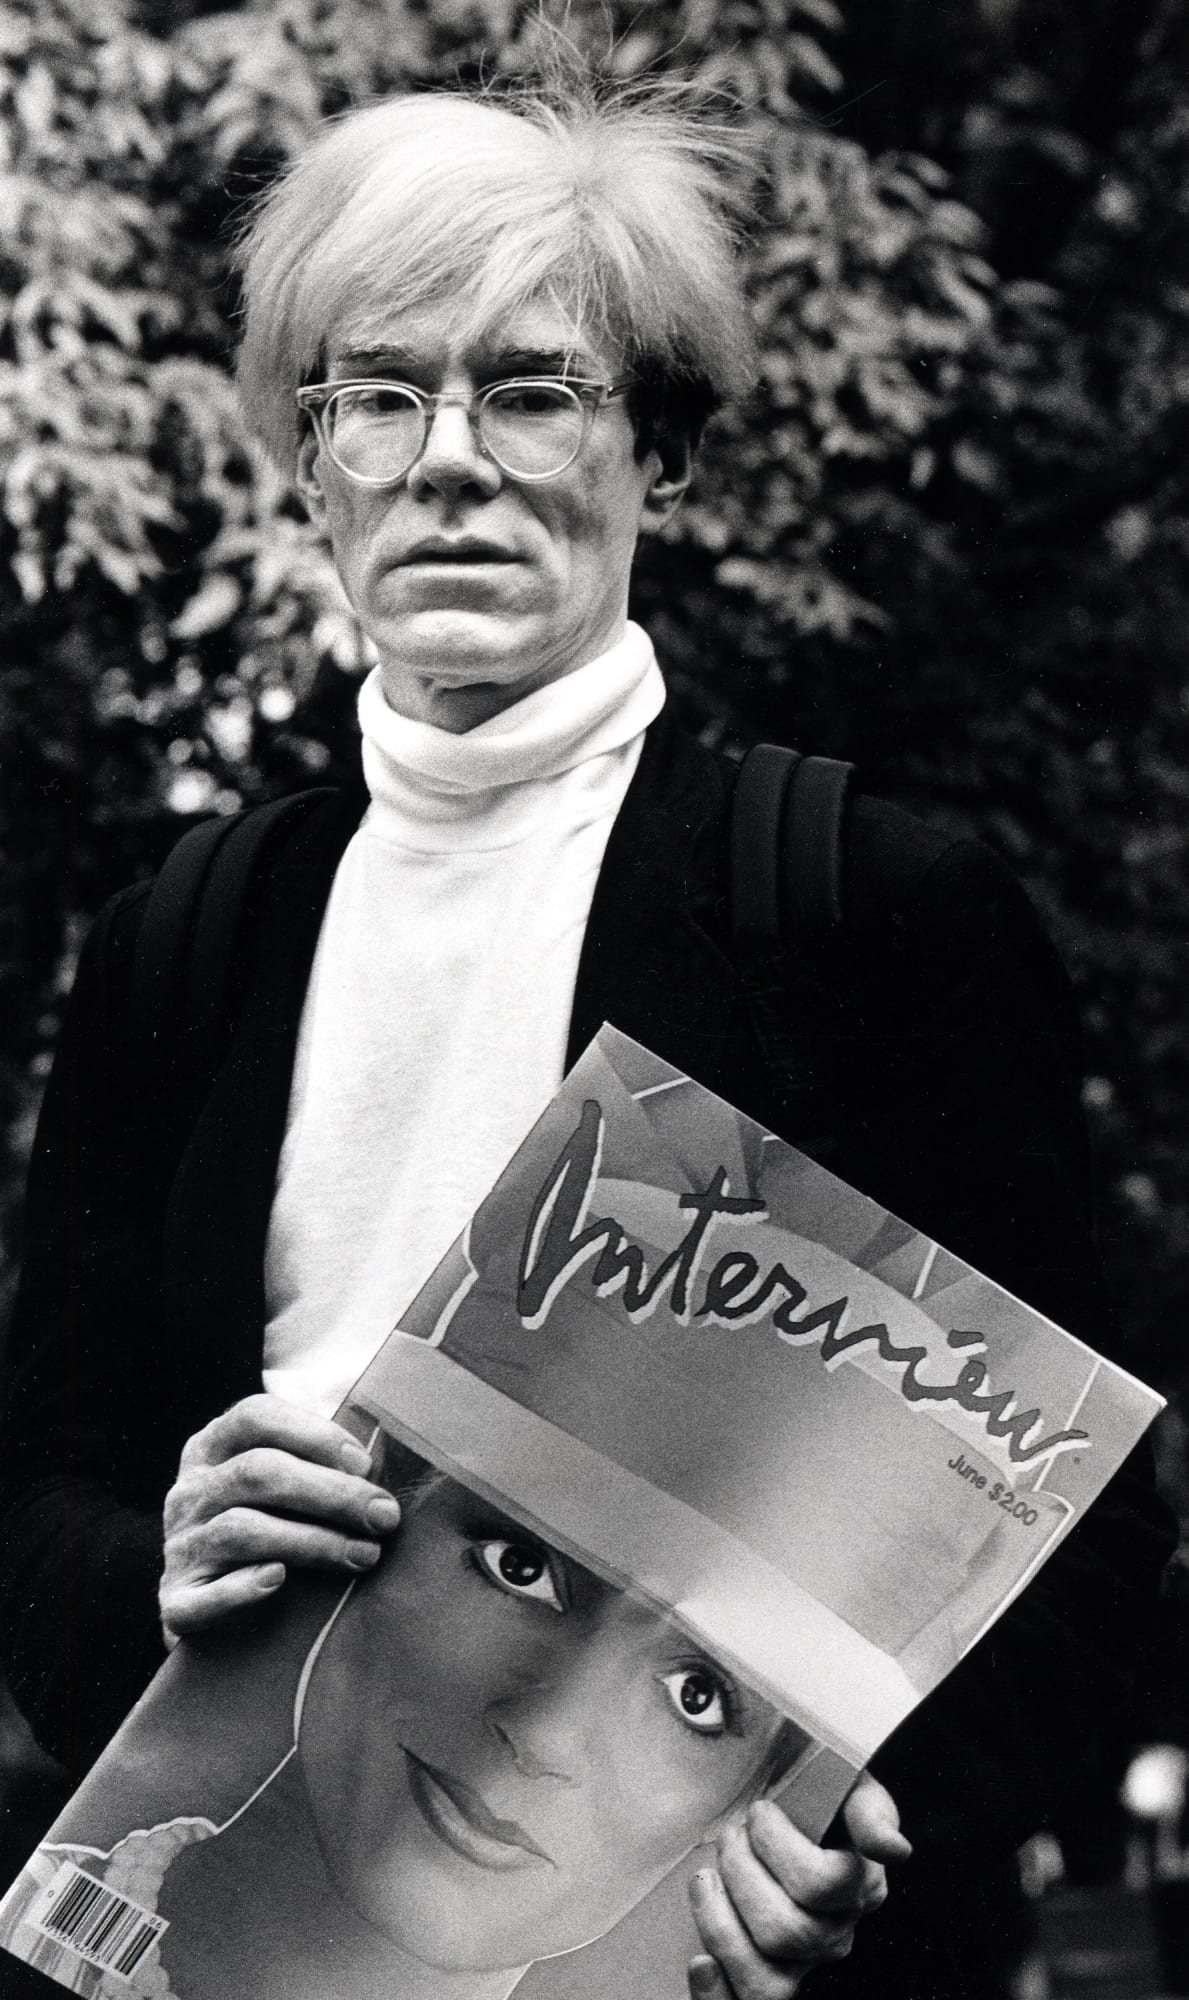 Magyar Éremkibocsátó Kft. - Andy Warhol és a pop art születése